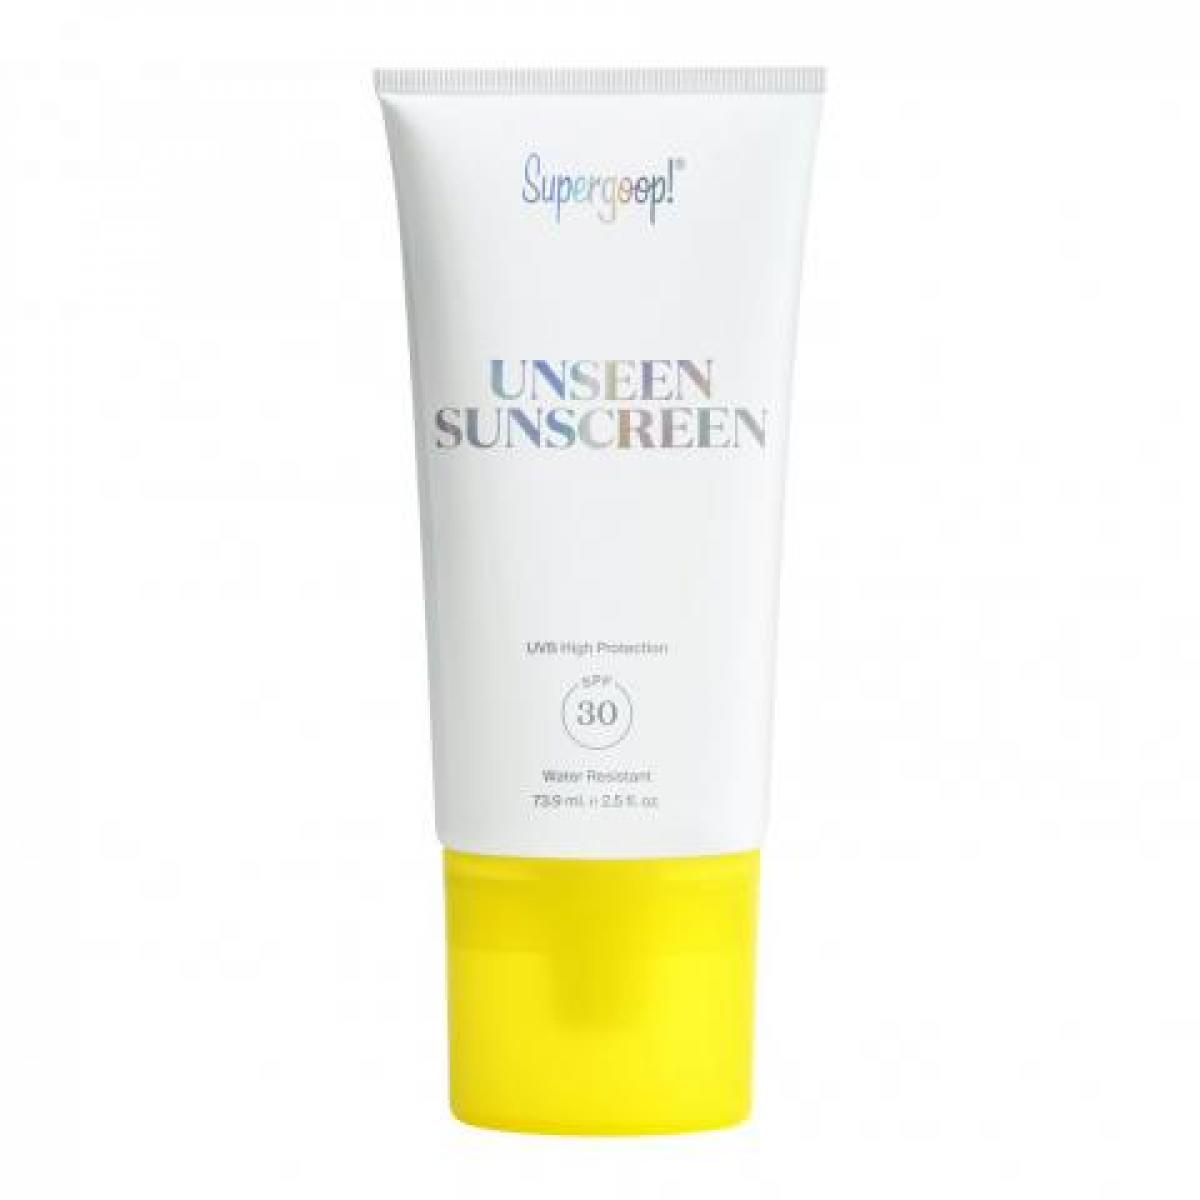 Unseen Sunscreen SPF 30 de Supergoop